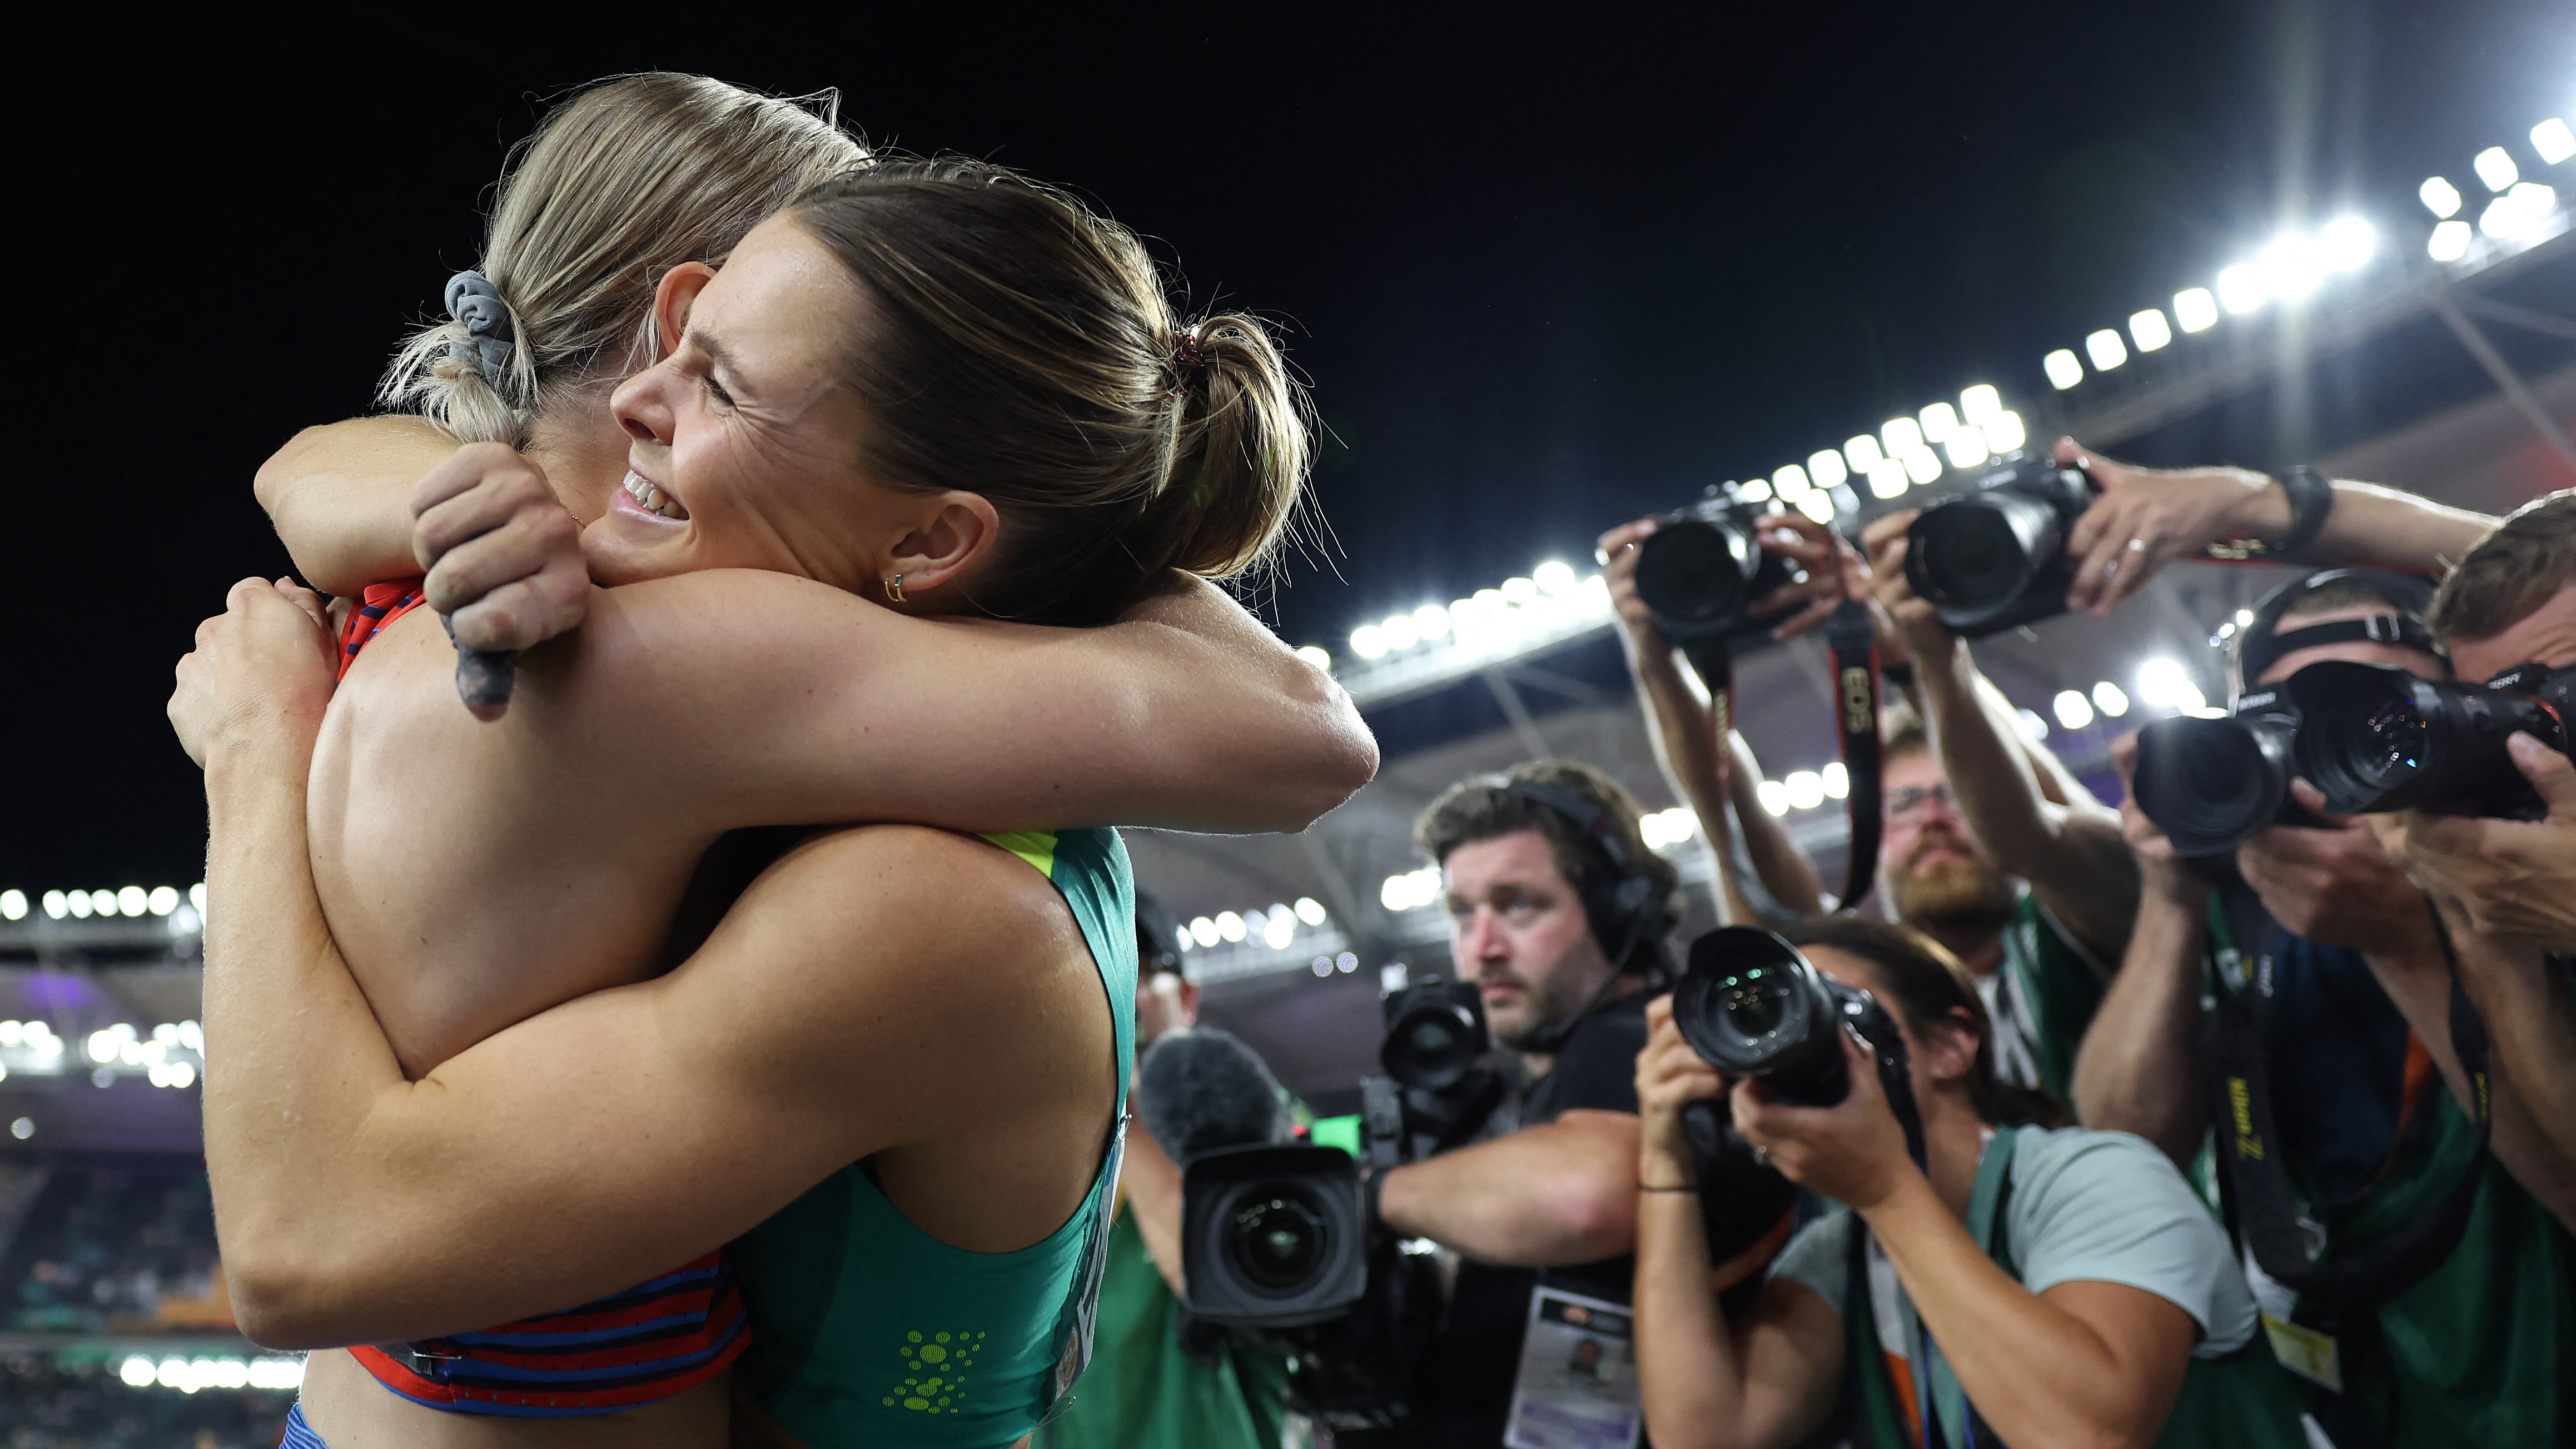 Az amerikai Katie Moon ünnepel az ausztrál Nina Kennedyvel, miután úgy döntenek, hogy megosztoznak az aranyérme a női rúdugrás döntőjében az atlétikai világbajnokságon Budapesten.